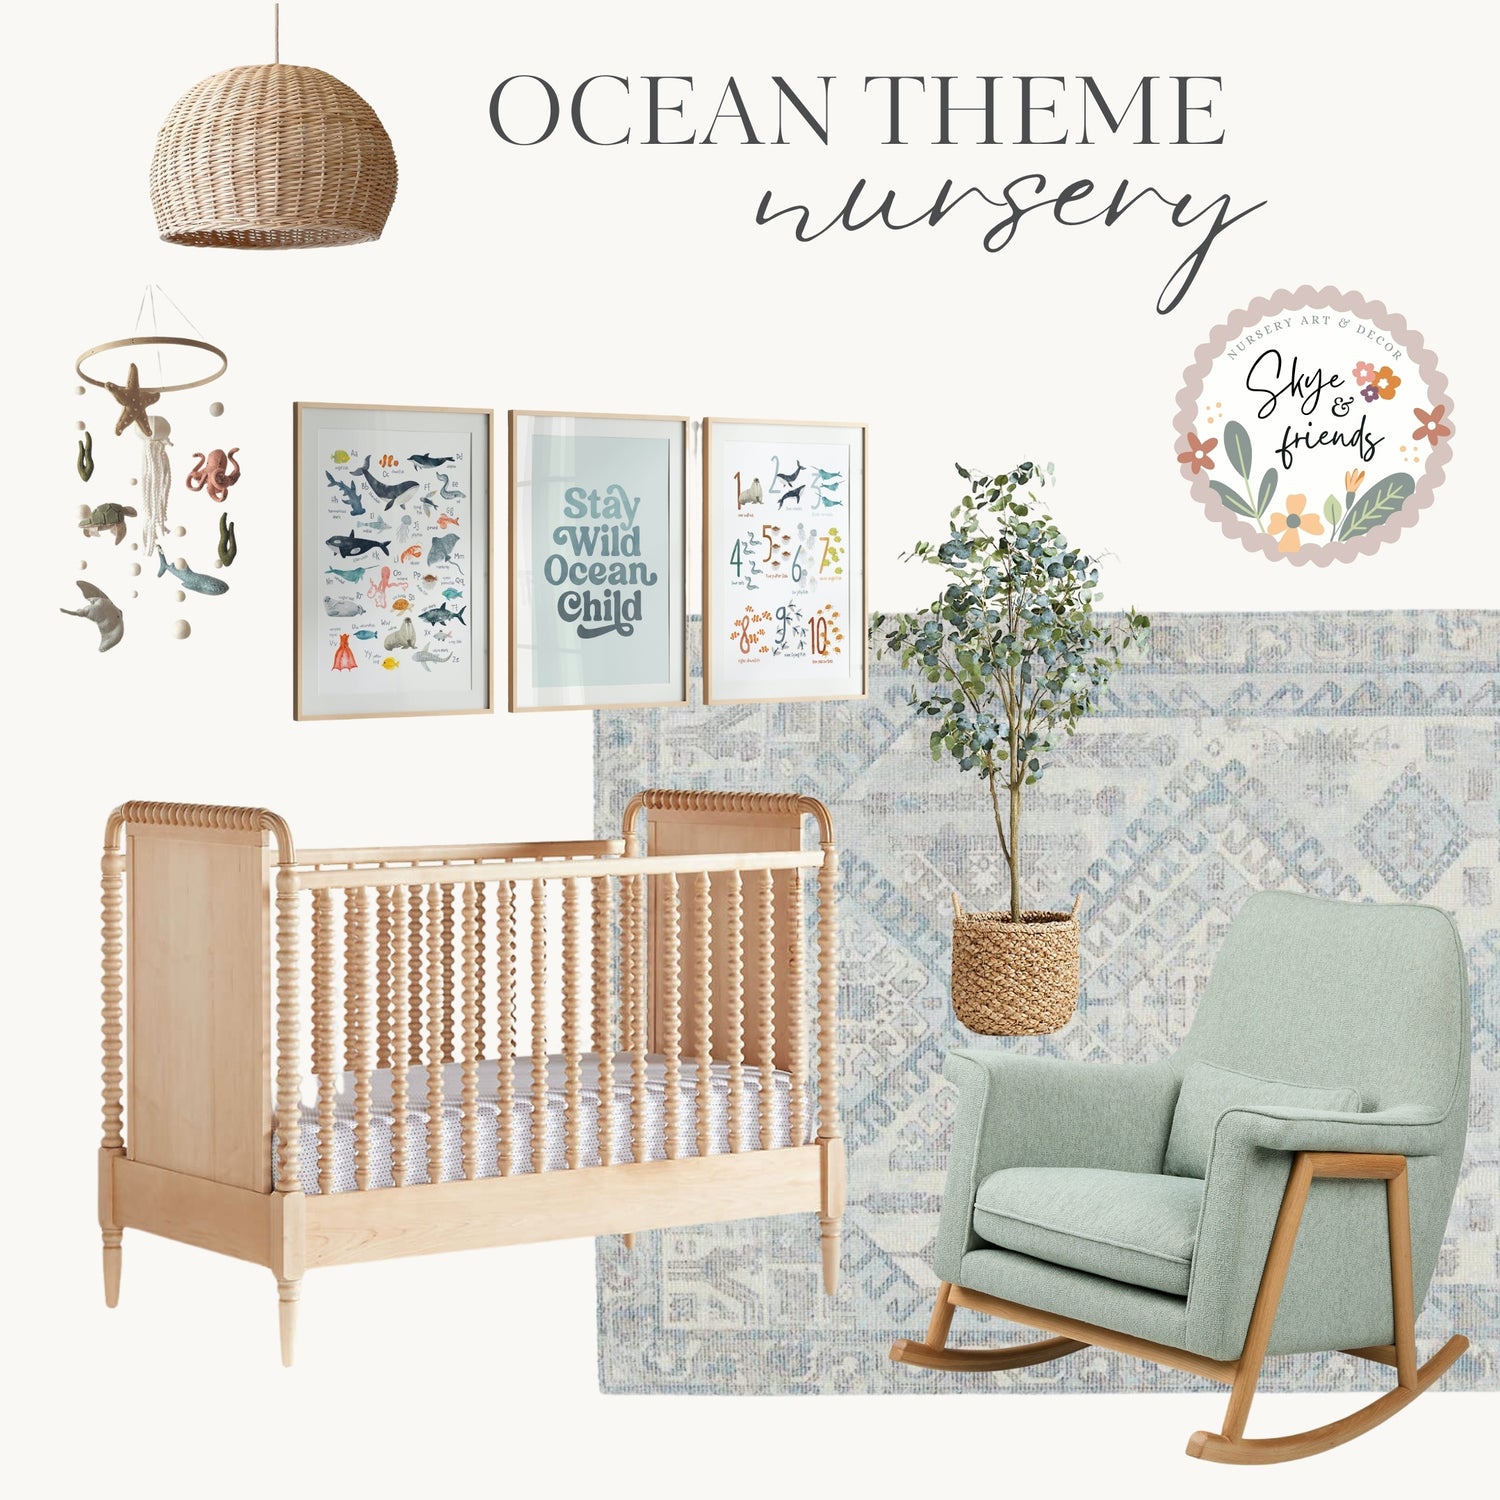 Ocean Theme Nursery - Get the Look